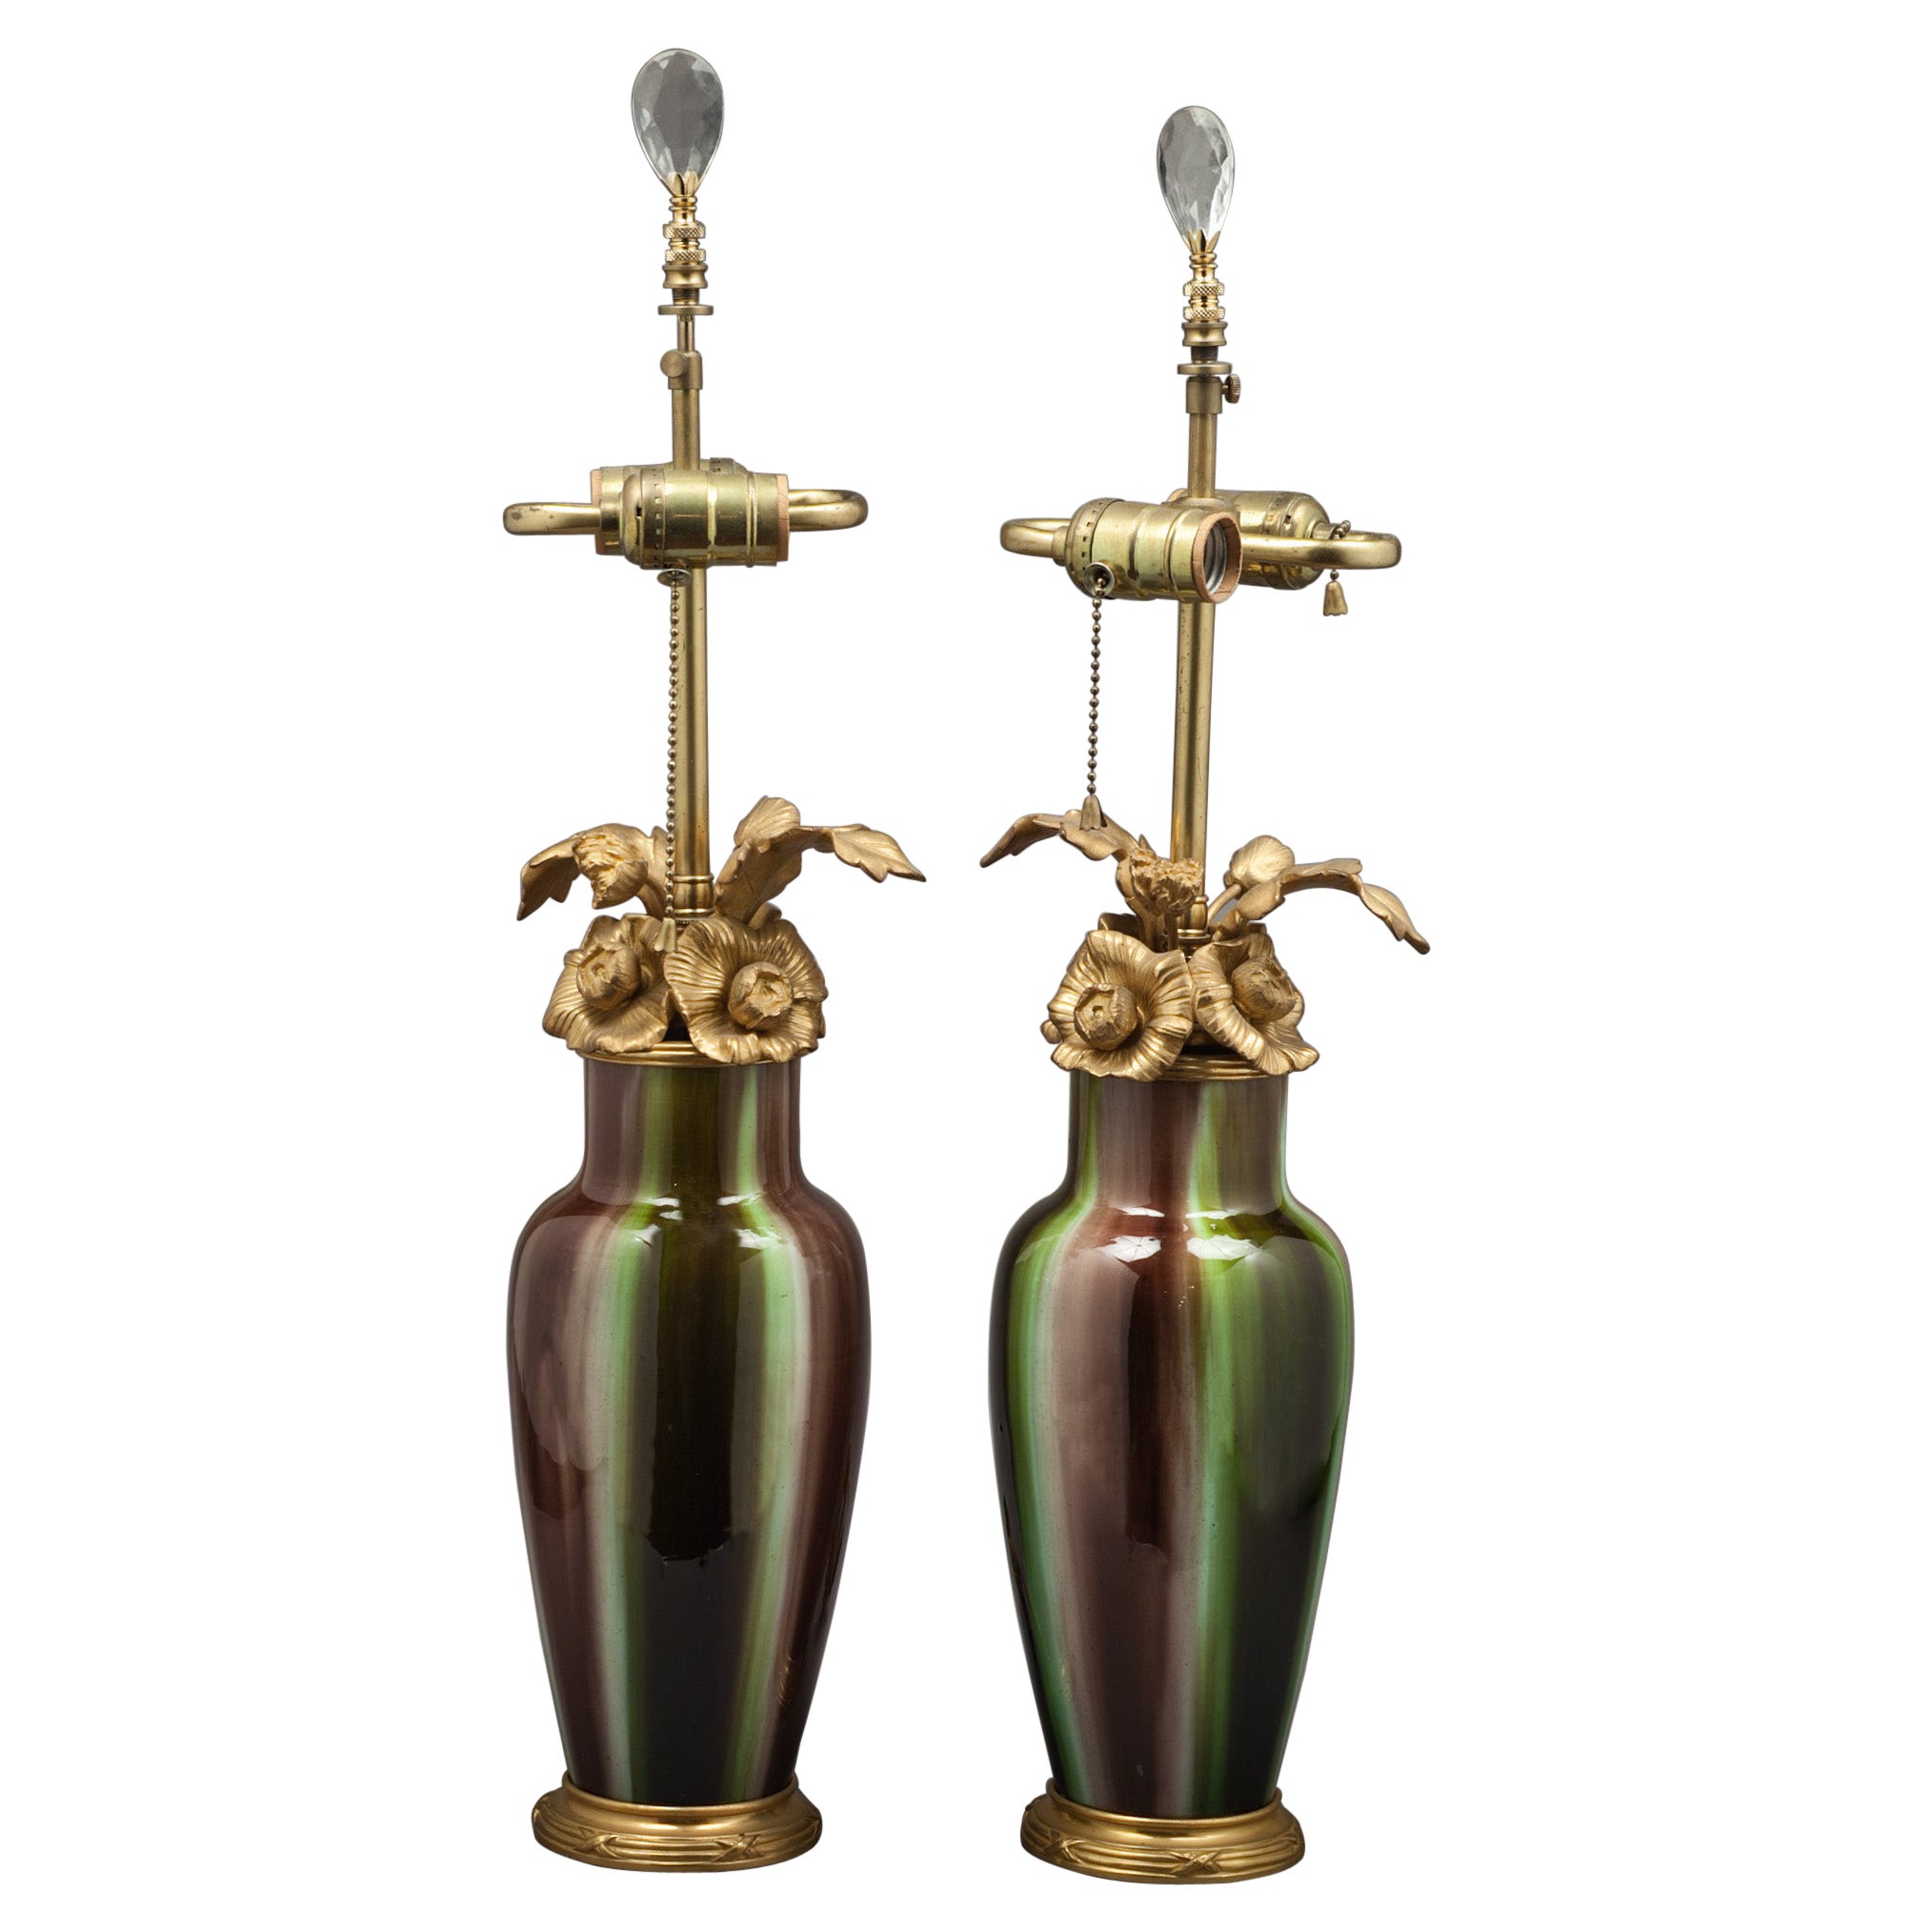 Paire de lampes en porcelaine de style chinois montées sur bronze, françaises, vers 1900